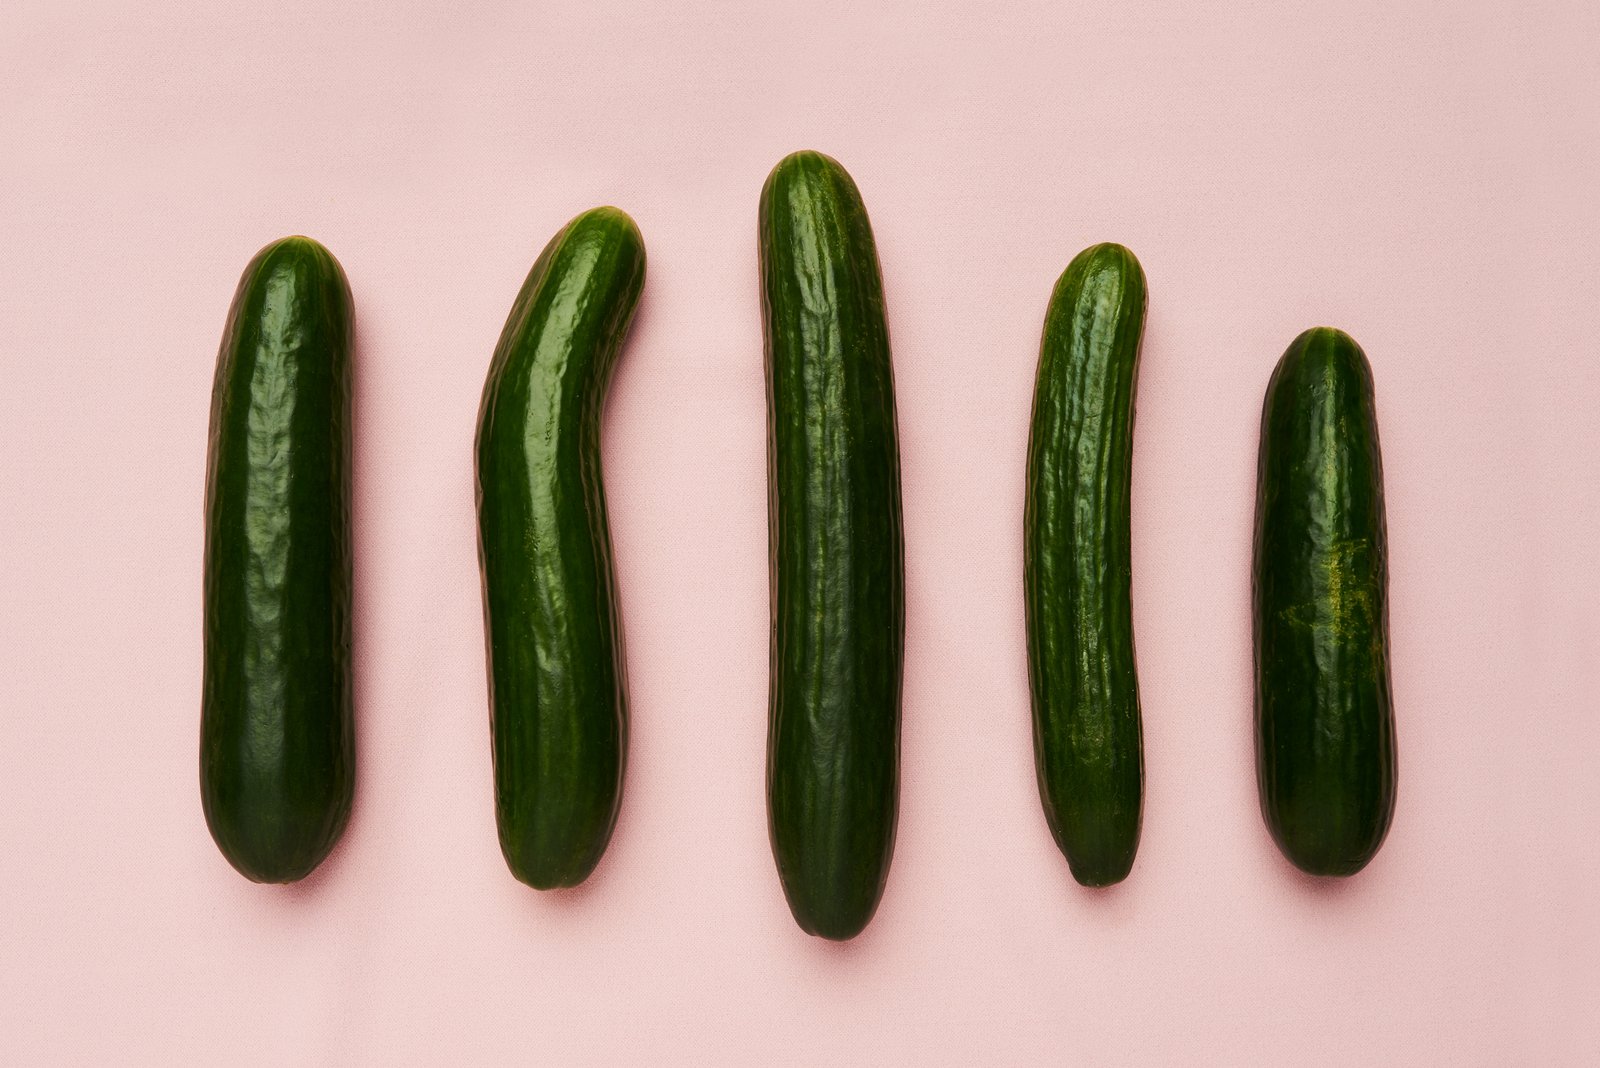 Farklı penis şekillerinin sembolü olarak salatalık